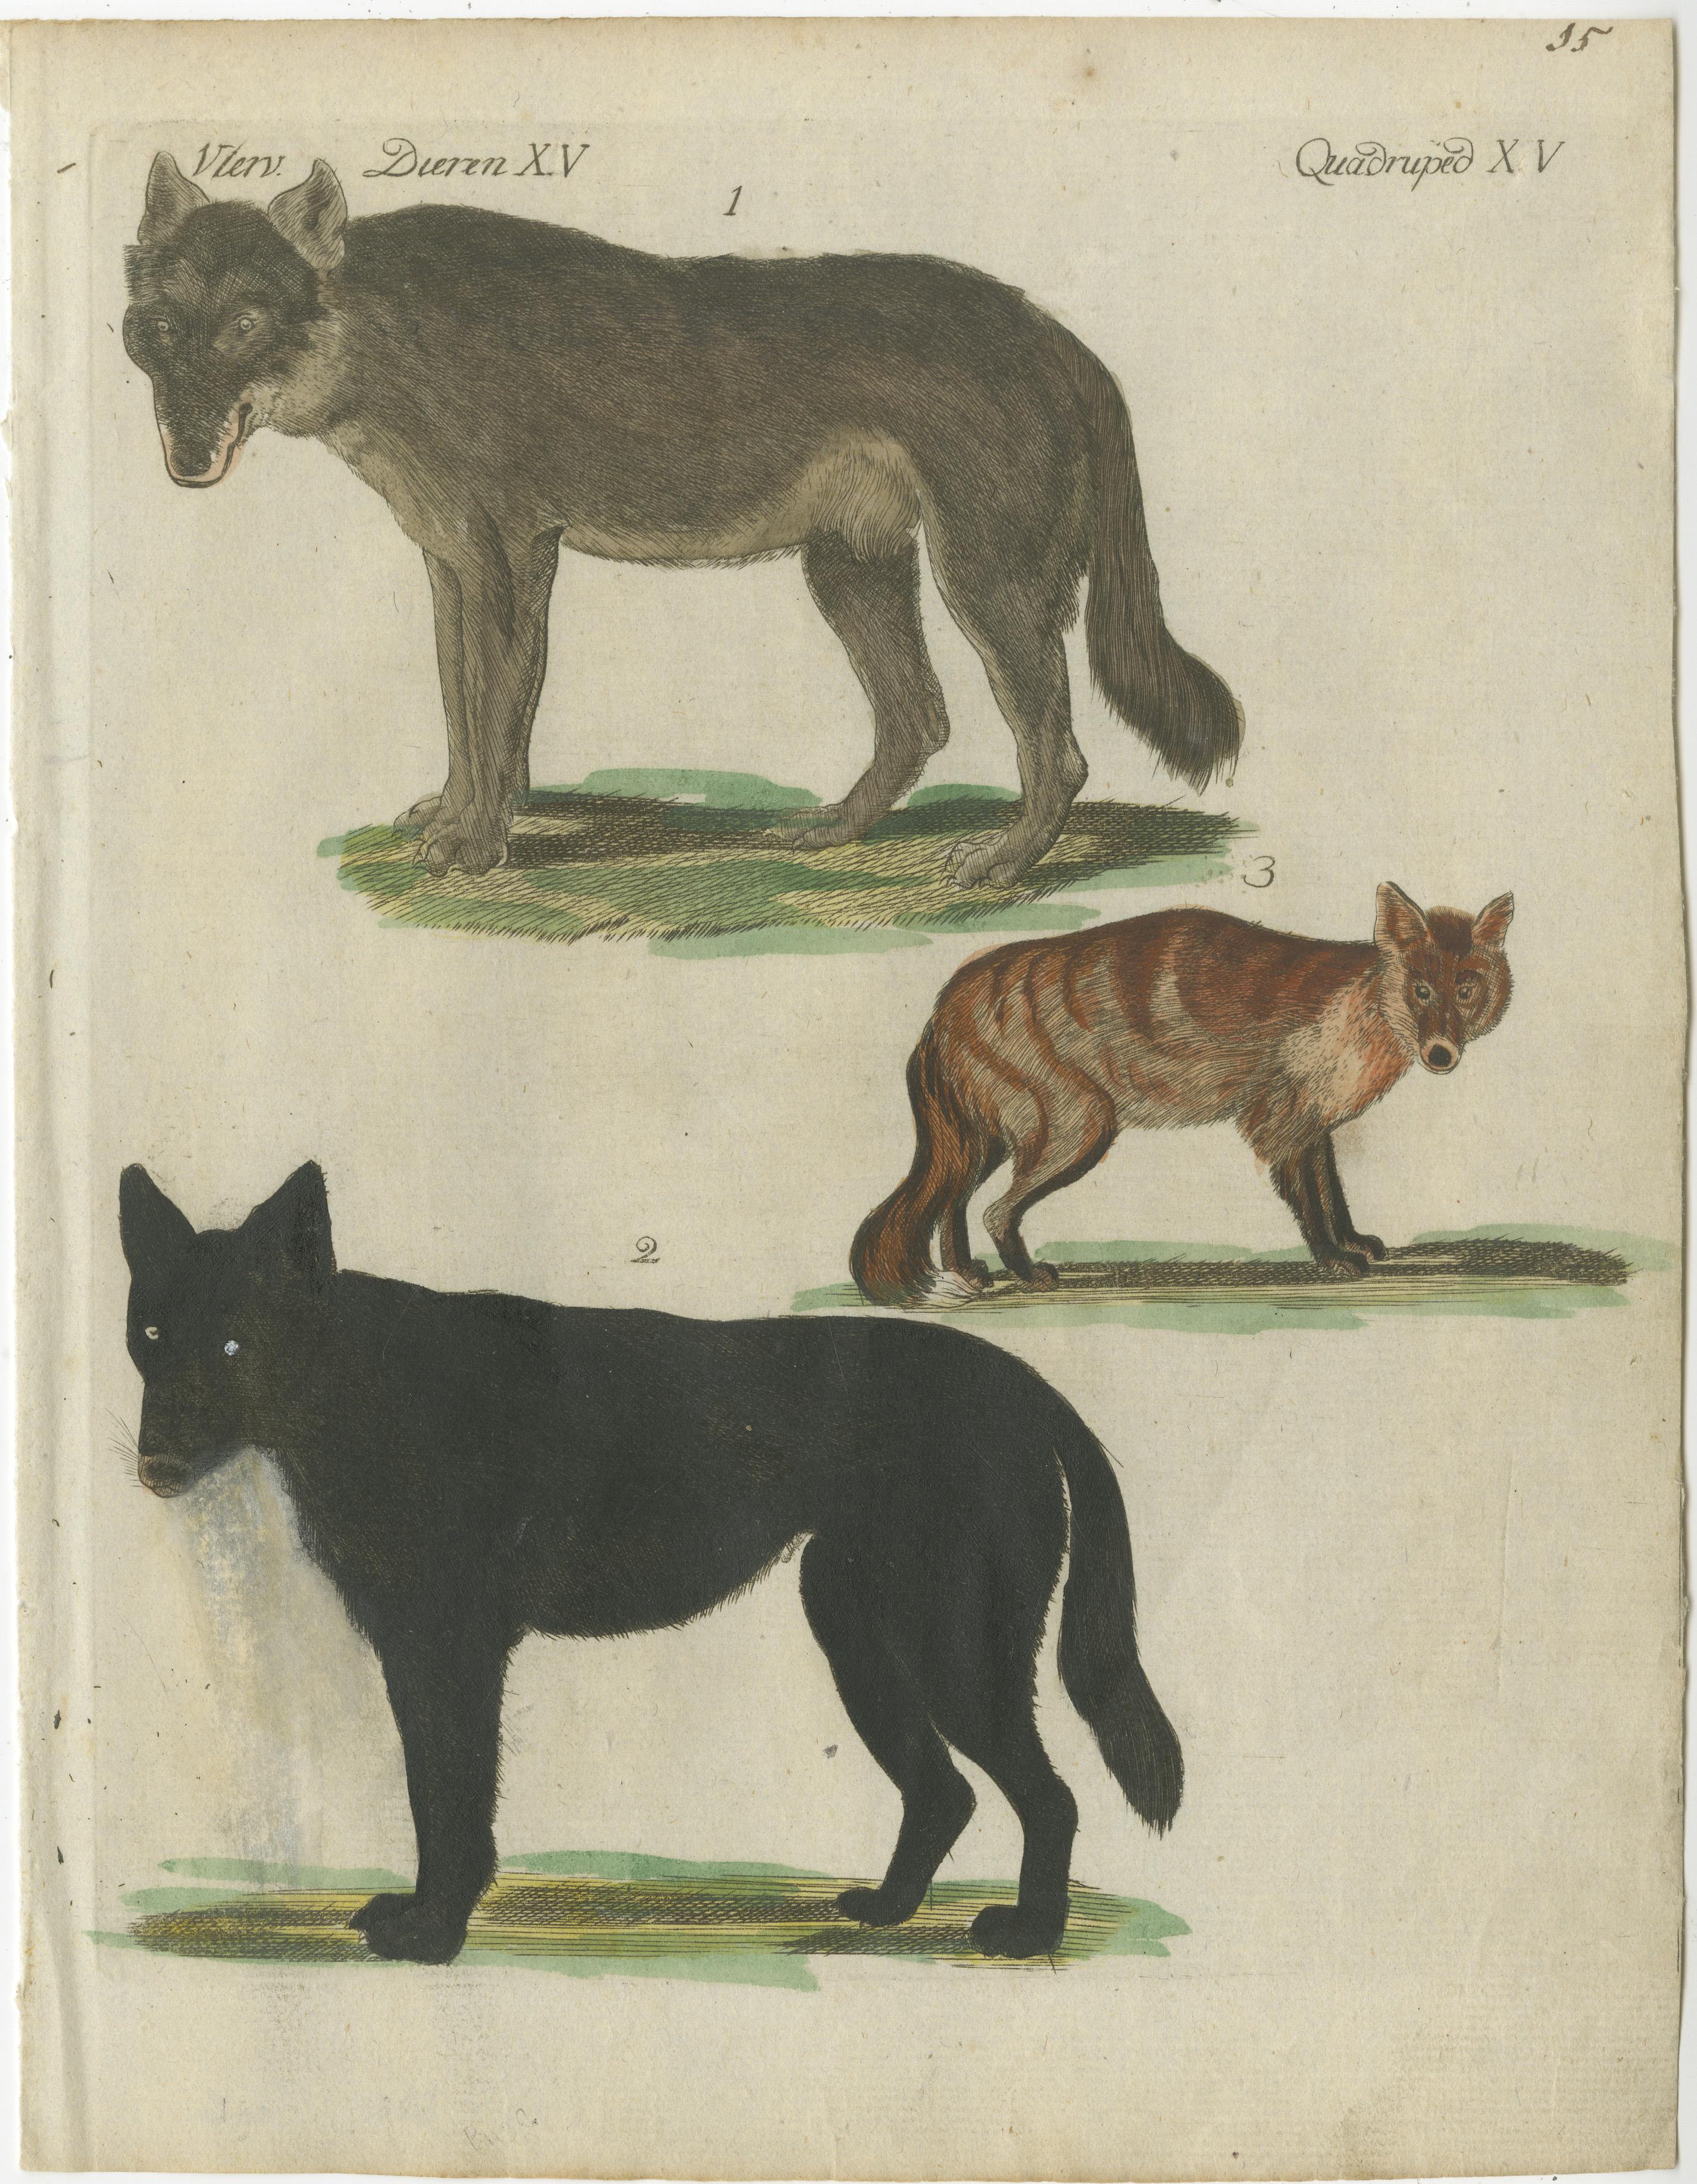 Antiker Originaldruck von Wölfen und einem Fuchs. Dieser Kupferstich stammt aus einem sehr seltenen unbekannten niederländischen Werk. Die Tafeln ähneln den Tafeln in dem berühmten deutschen Werk: 